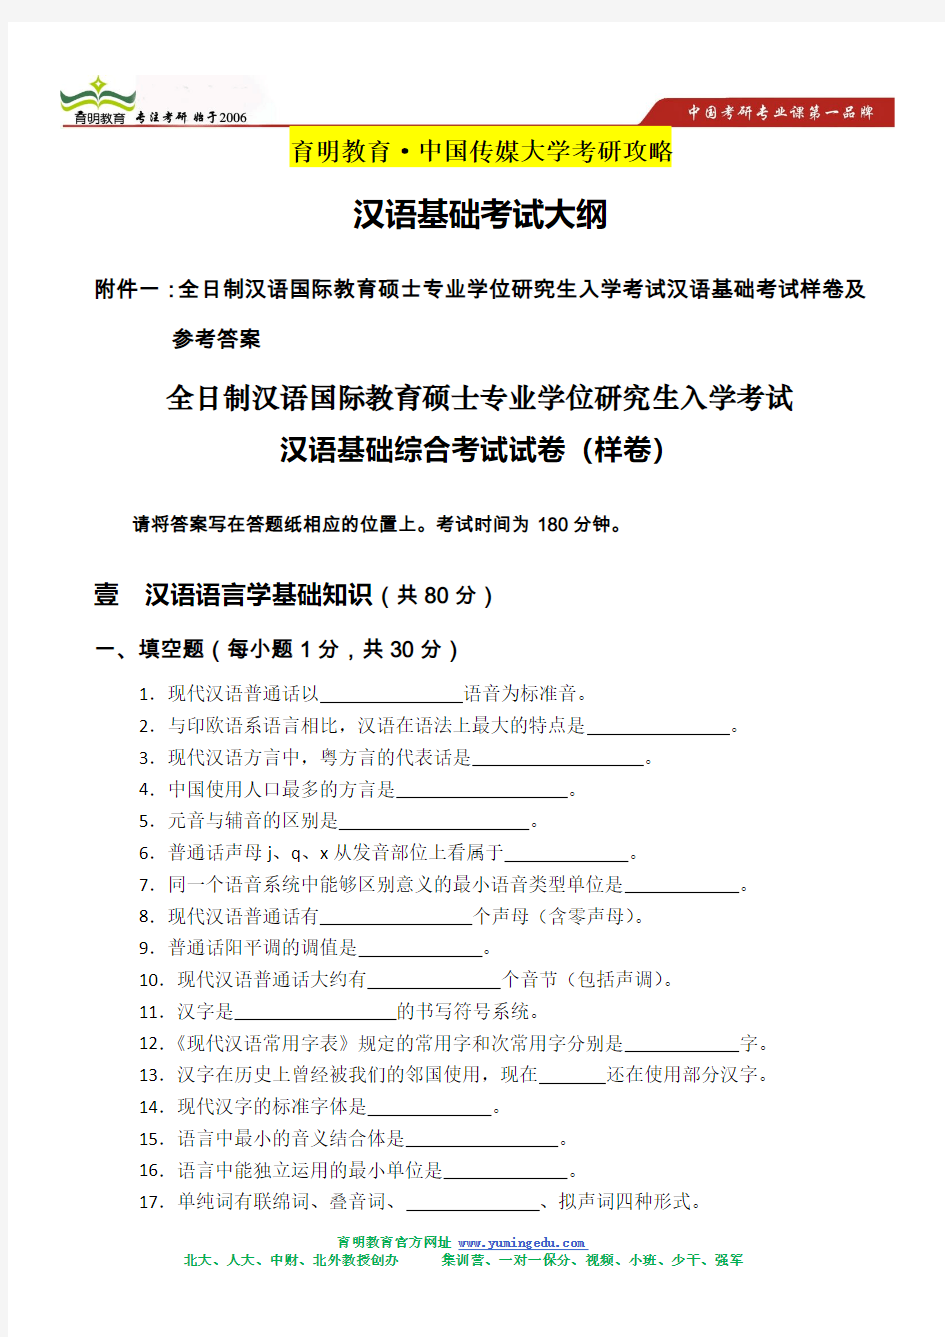 中国传媒大学汉语基础综合考试真题及答案